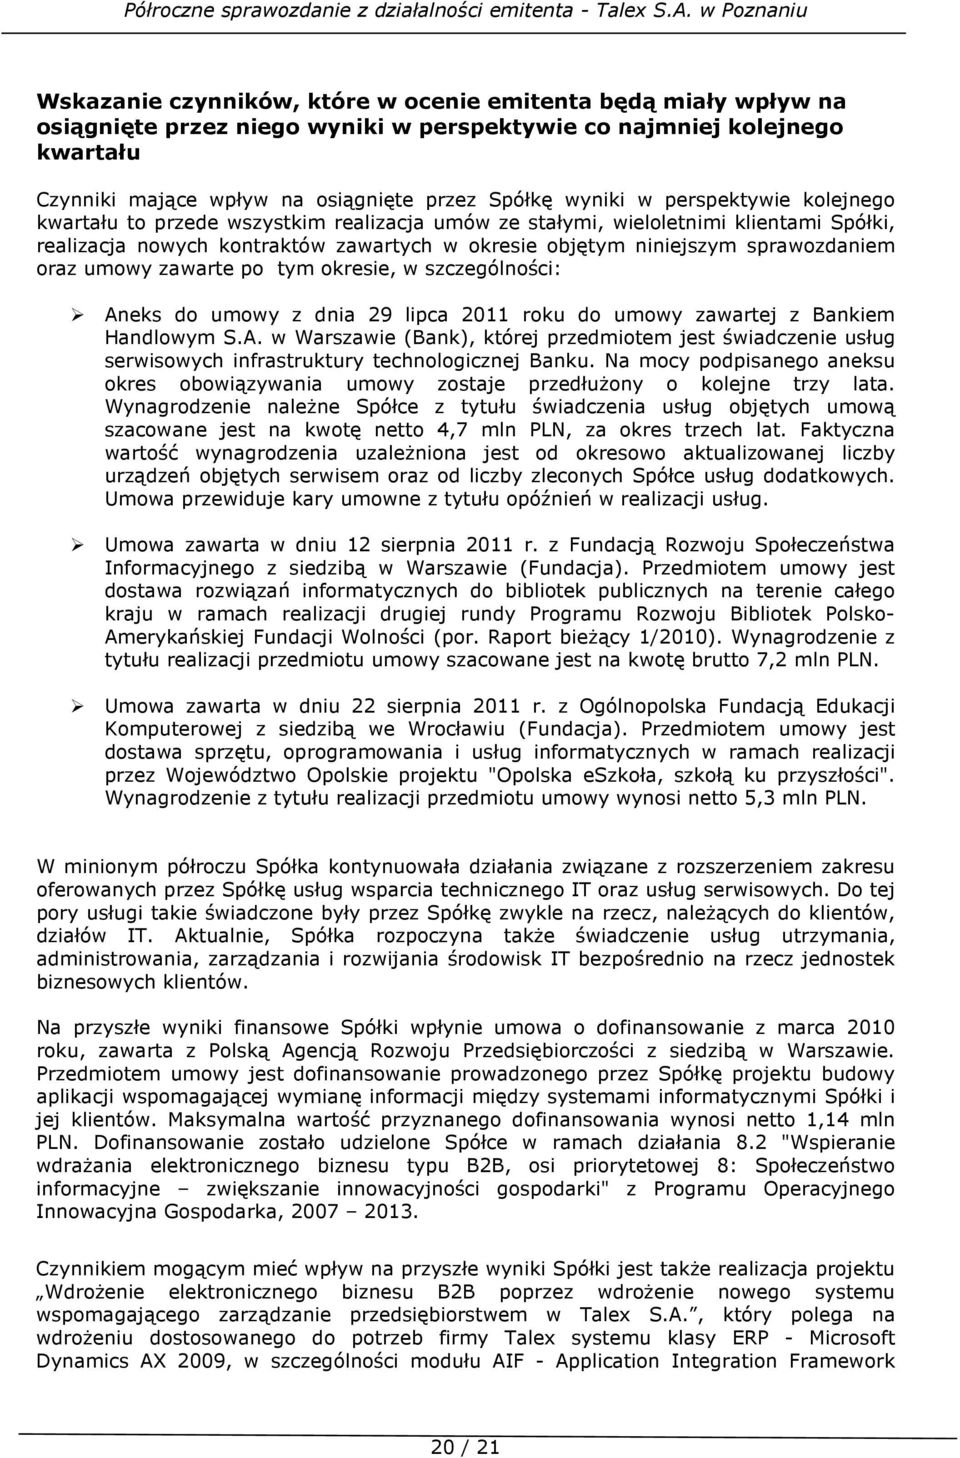 umowy zawarte po tym okresie, w szczególności: Aneks do umowy z dnia 29 lipca 2011 roku do umowy zawartej z Bankiem Handlowym S.A. w Warszawie (Bank), której przedmiotem jest świadczenie usług serwisowych infrastruktury technologicznej Banku.